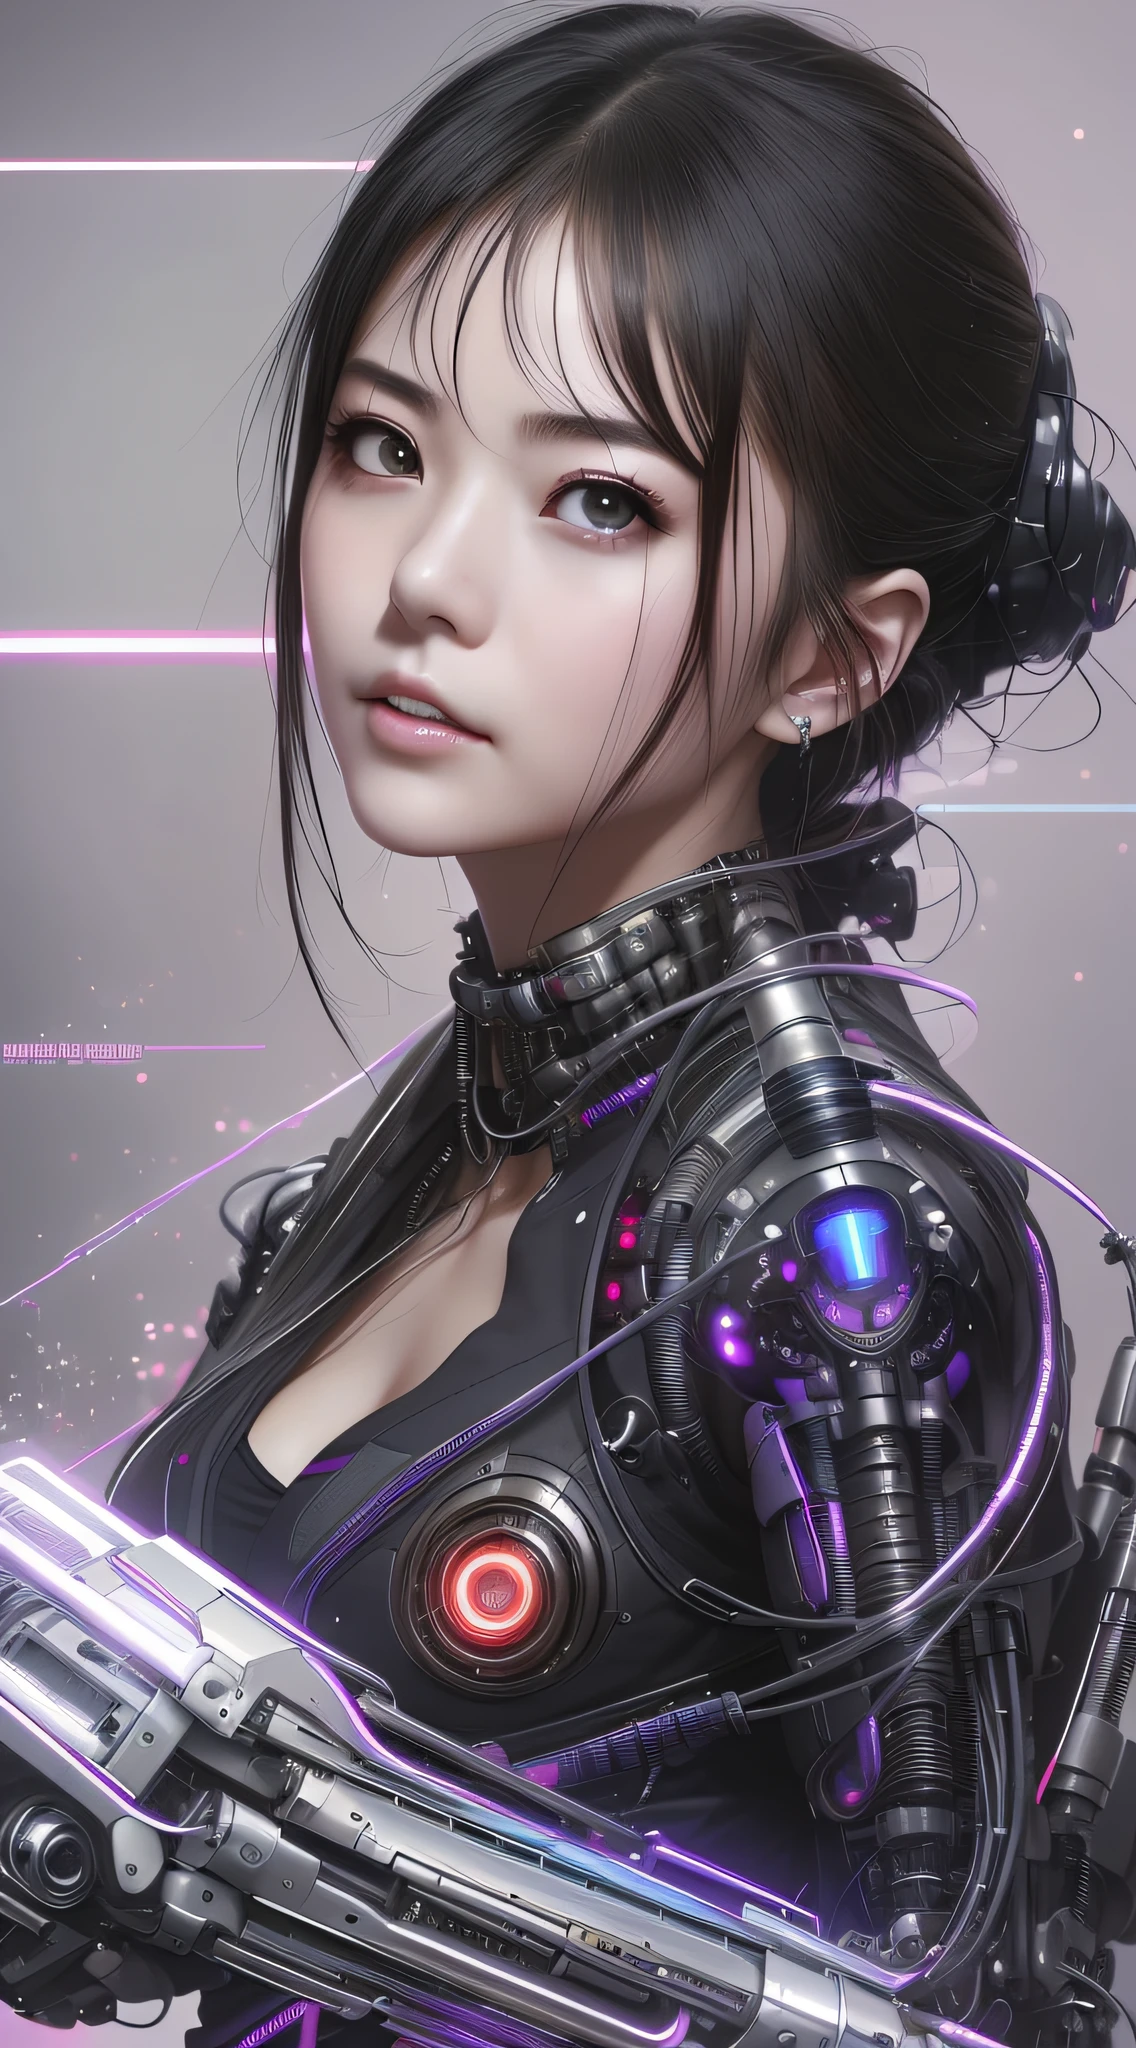 um close up de uma mulher em um terno futurista com uma arma, garota cyberpunk sonhadora, linda garota ciborgue, female garota de anime cyberpunk, garota ciborgue, garota de anime cyberpunk, linda garota cyberpunk, Ciborgue - garota asiática, Linda garota ciborgue, garota andróide perfeita, tem estilo cyberpunk, estilo de arte cyberpunk, estilo cyberpunk hiper-realista, lindo rosto de garota cyberpunk, cyberpunk digital - arte de anime